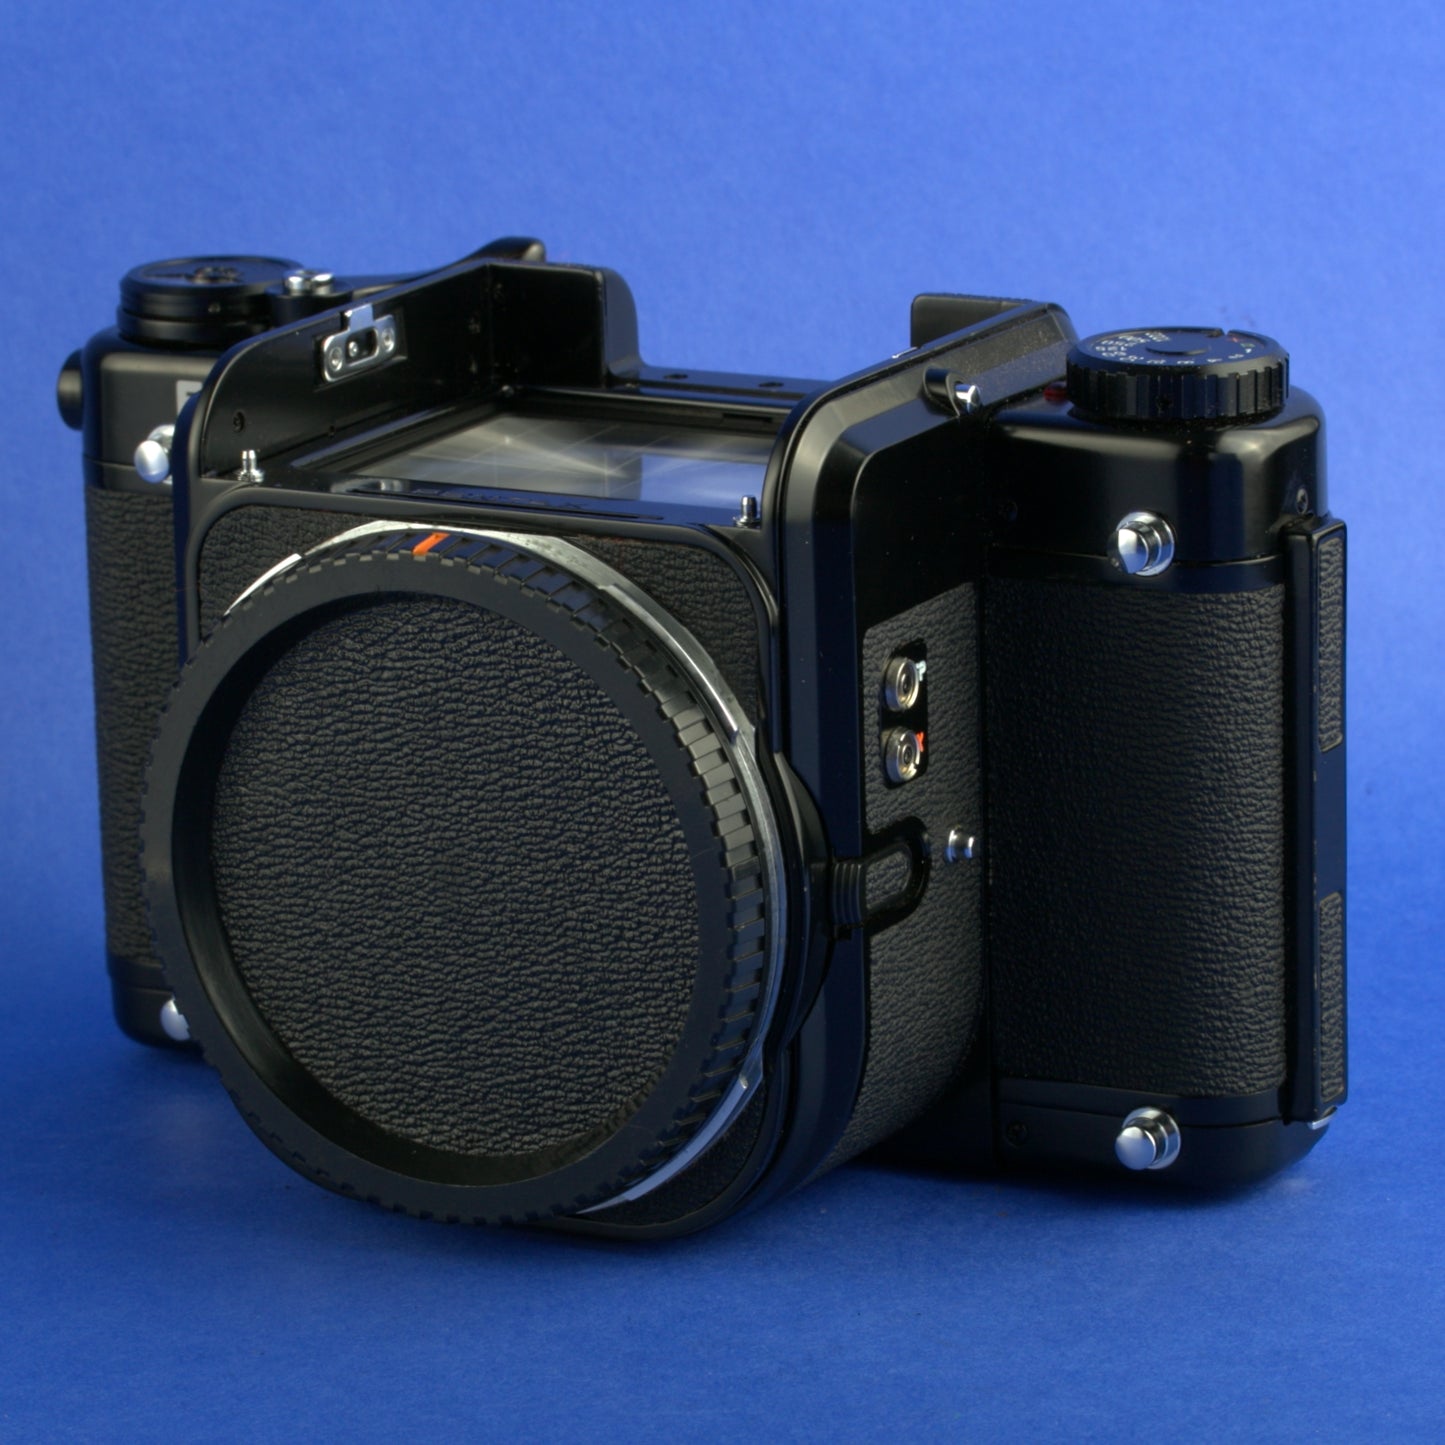 Pentax 67 Medium Format Camera Body Film Tested